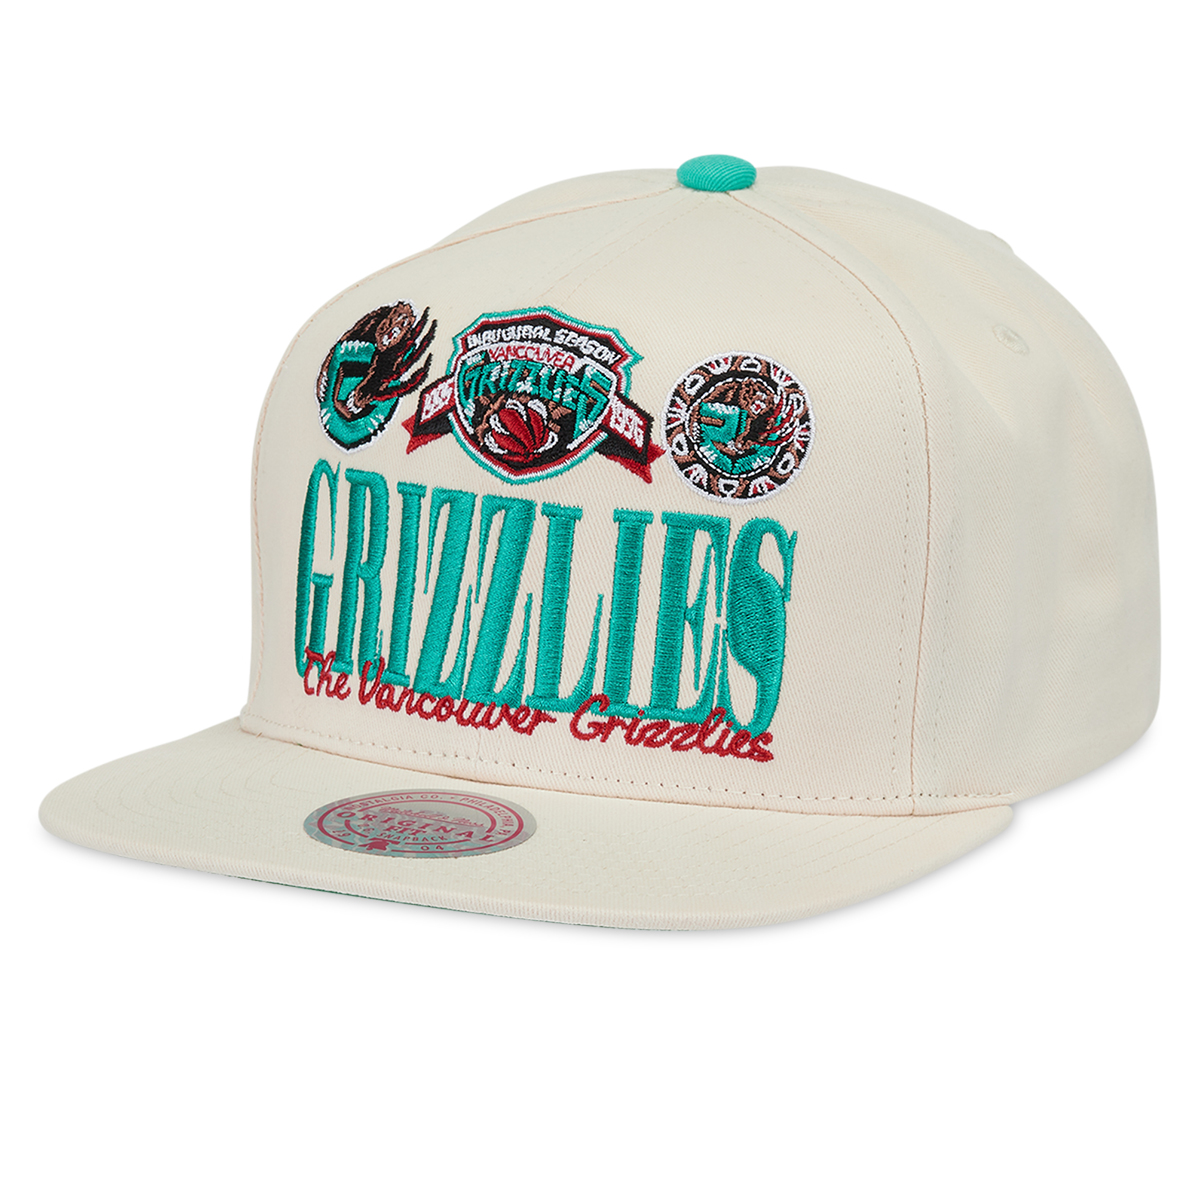 Vintage Vancouver Grizzlies NBA Snapback